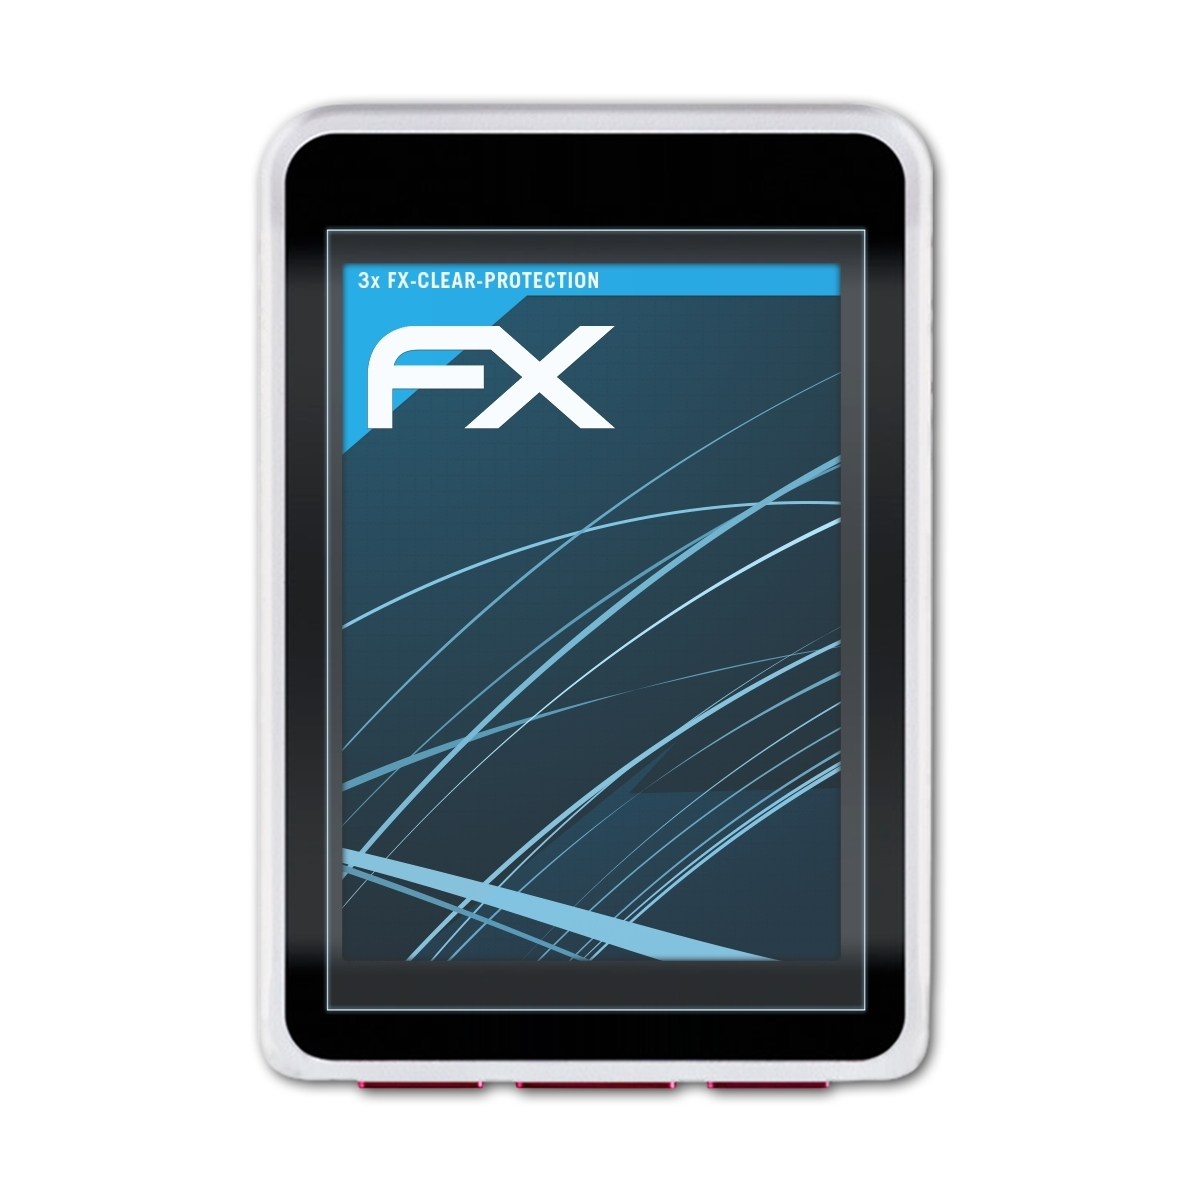 ATFOLIX 3x FX-Clear VDO Displayschutz(für GPS) M7